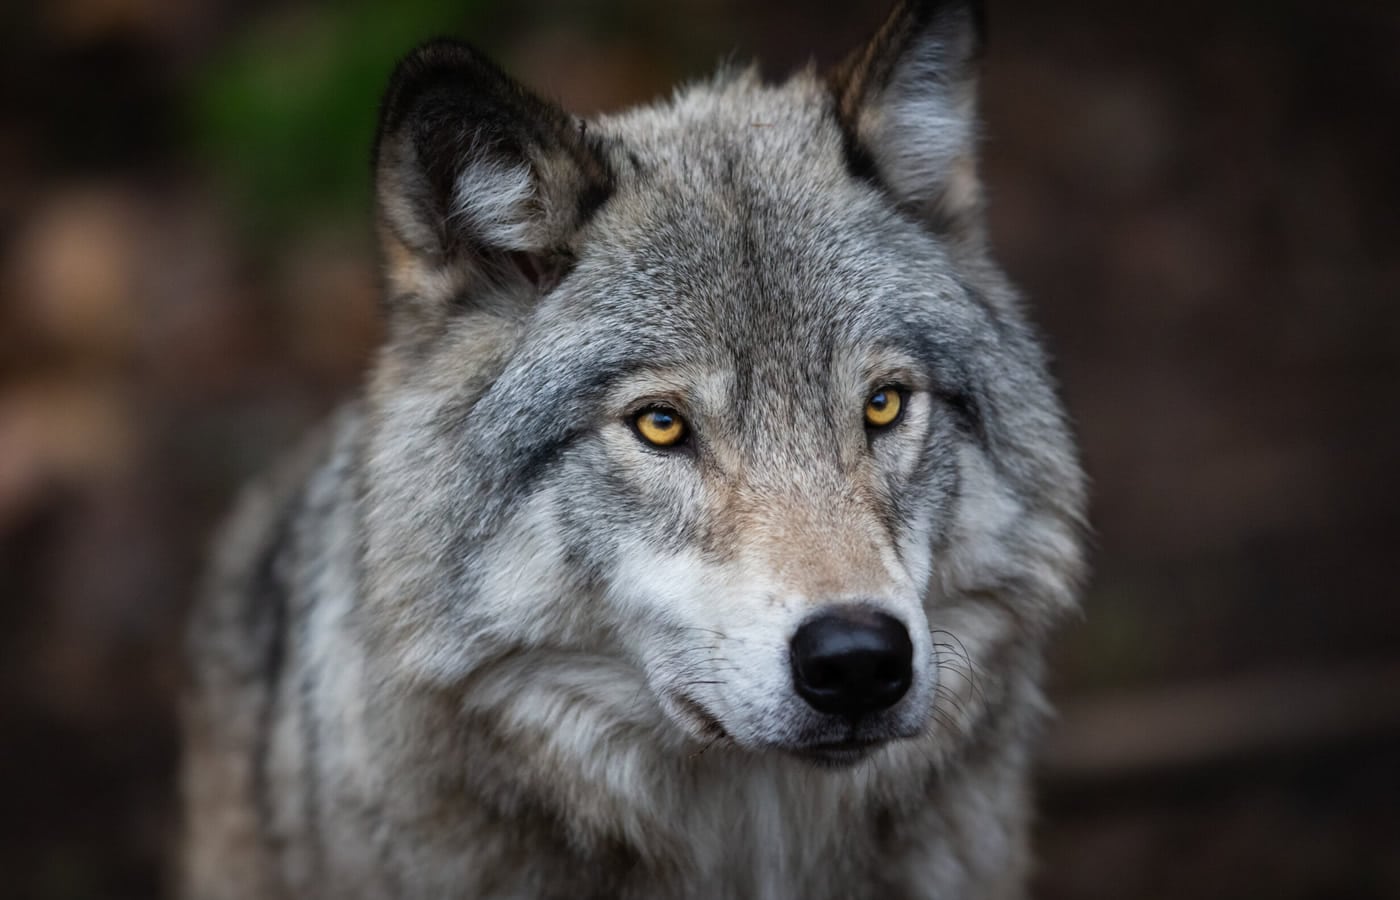 Πληθαίνουν οι καταγγελίες για επιθέσεις από λύκους σε πολλές περιοχές της Ελλάδας. Εικόνες σοκ από σκυλιά που δέχθηκαν επίθεση από λύκους.